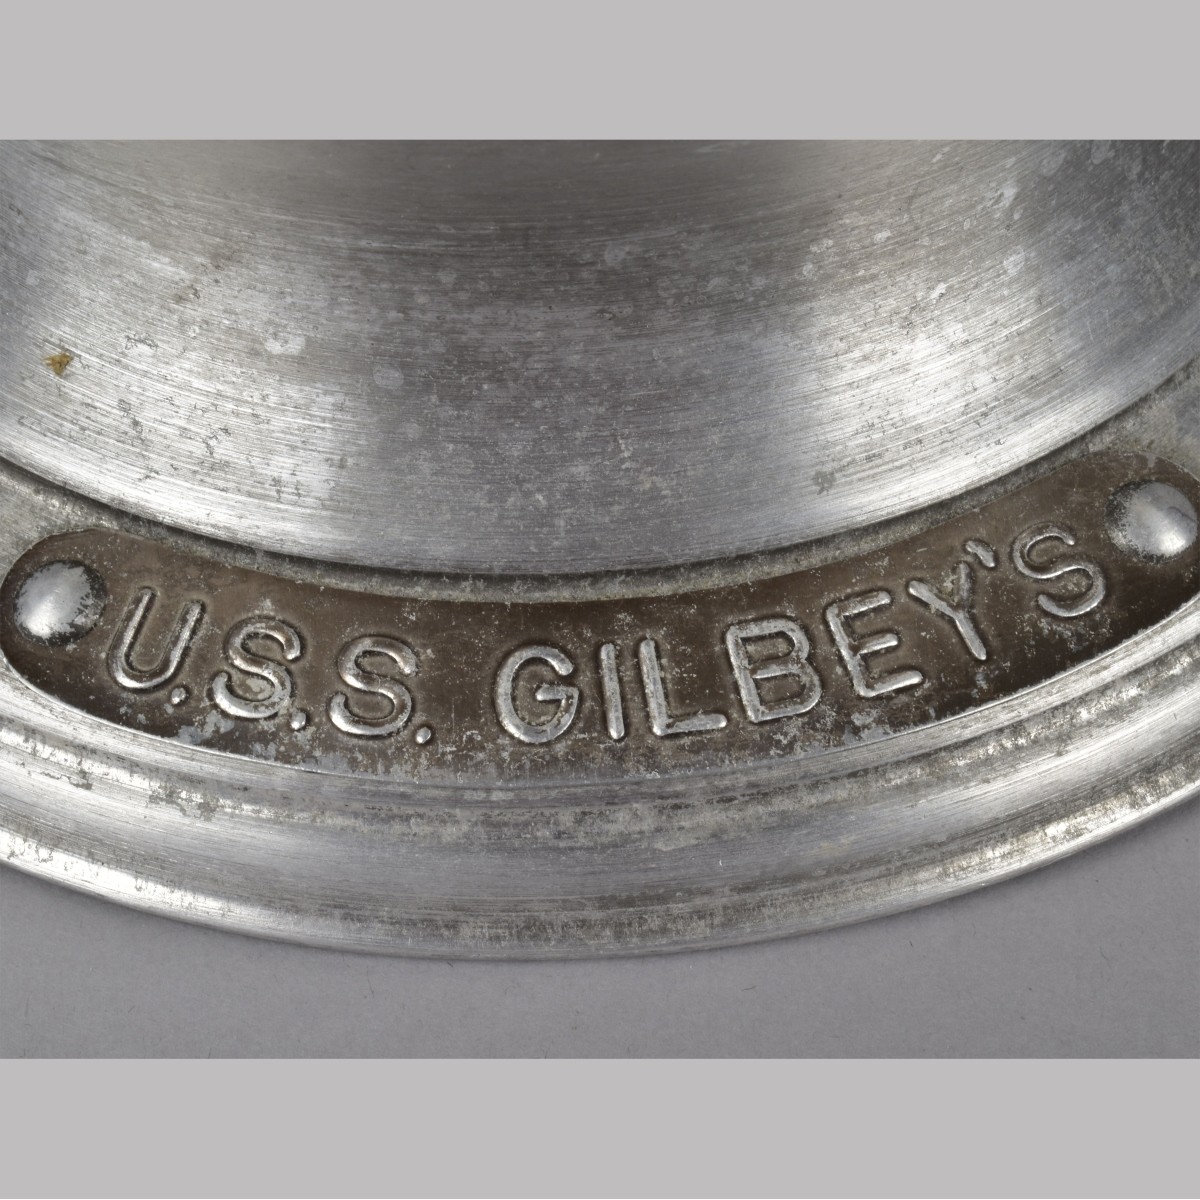 Diver's Helmet Ice Bucket USS Gilby's